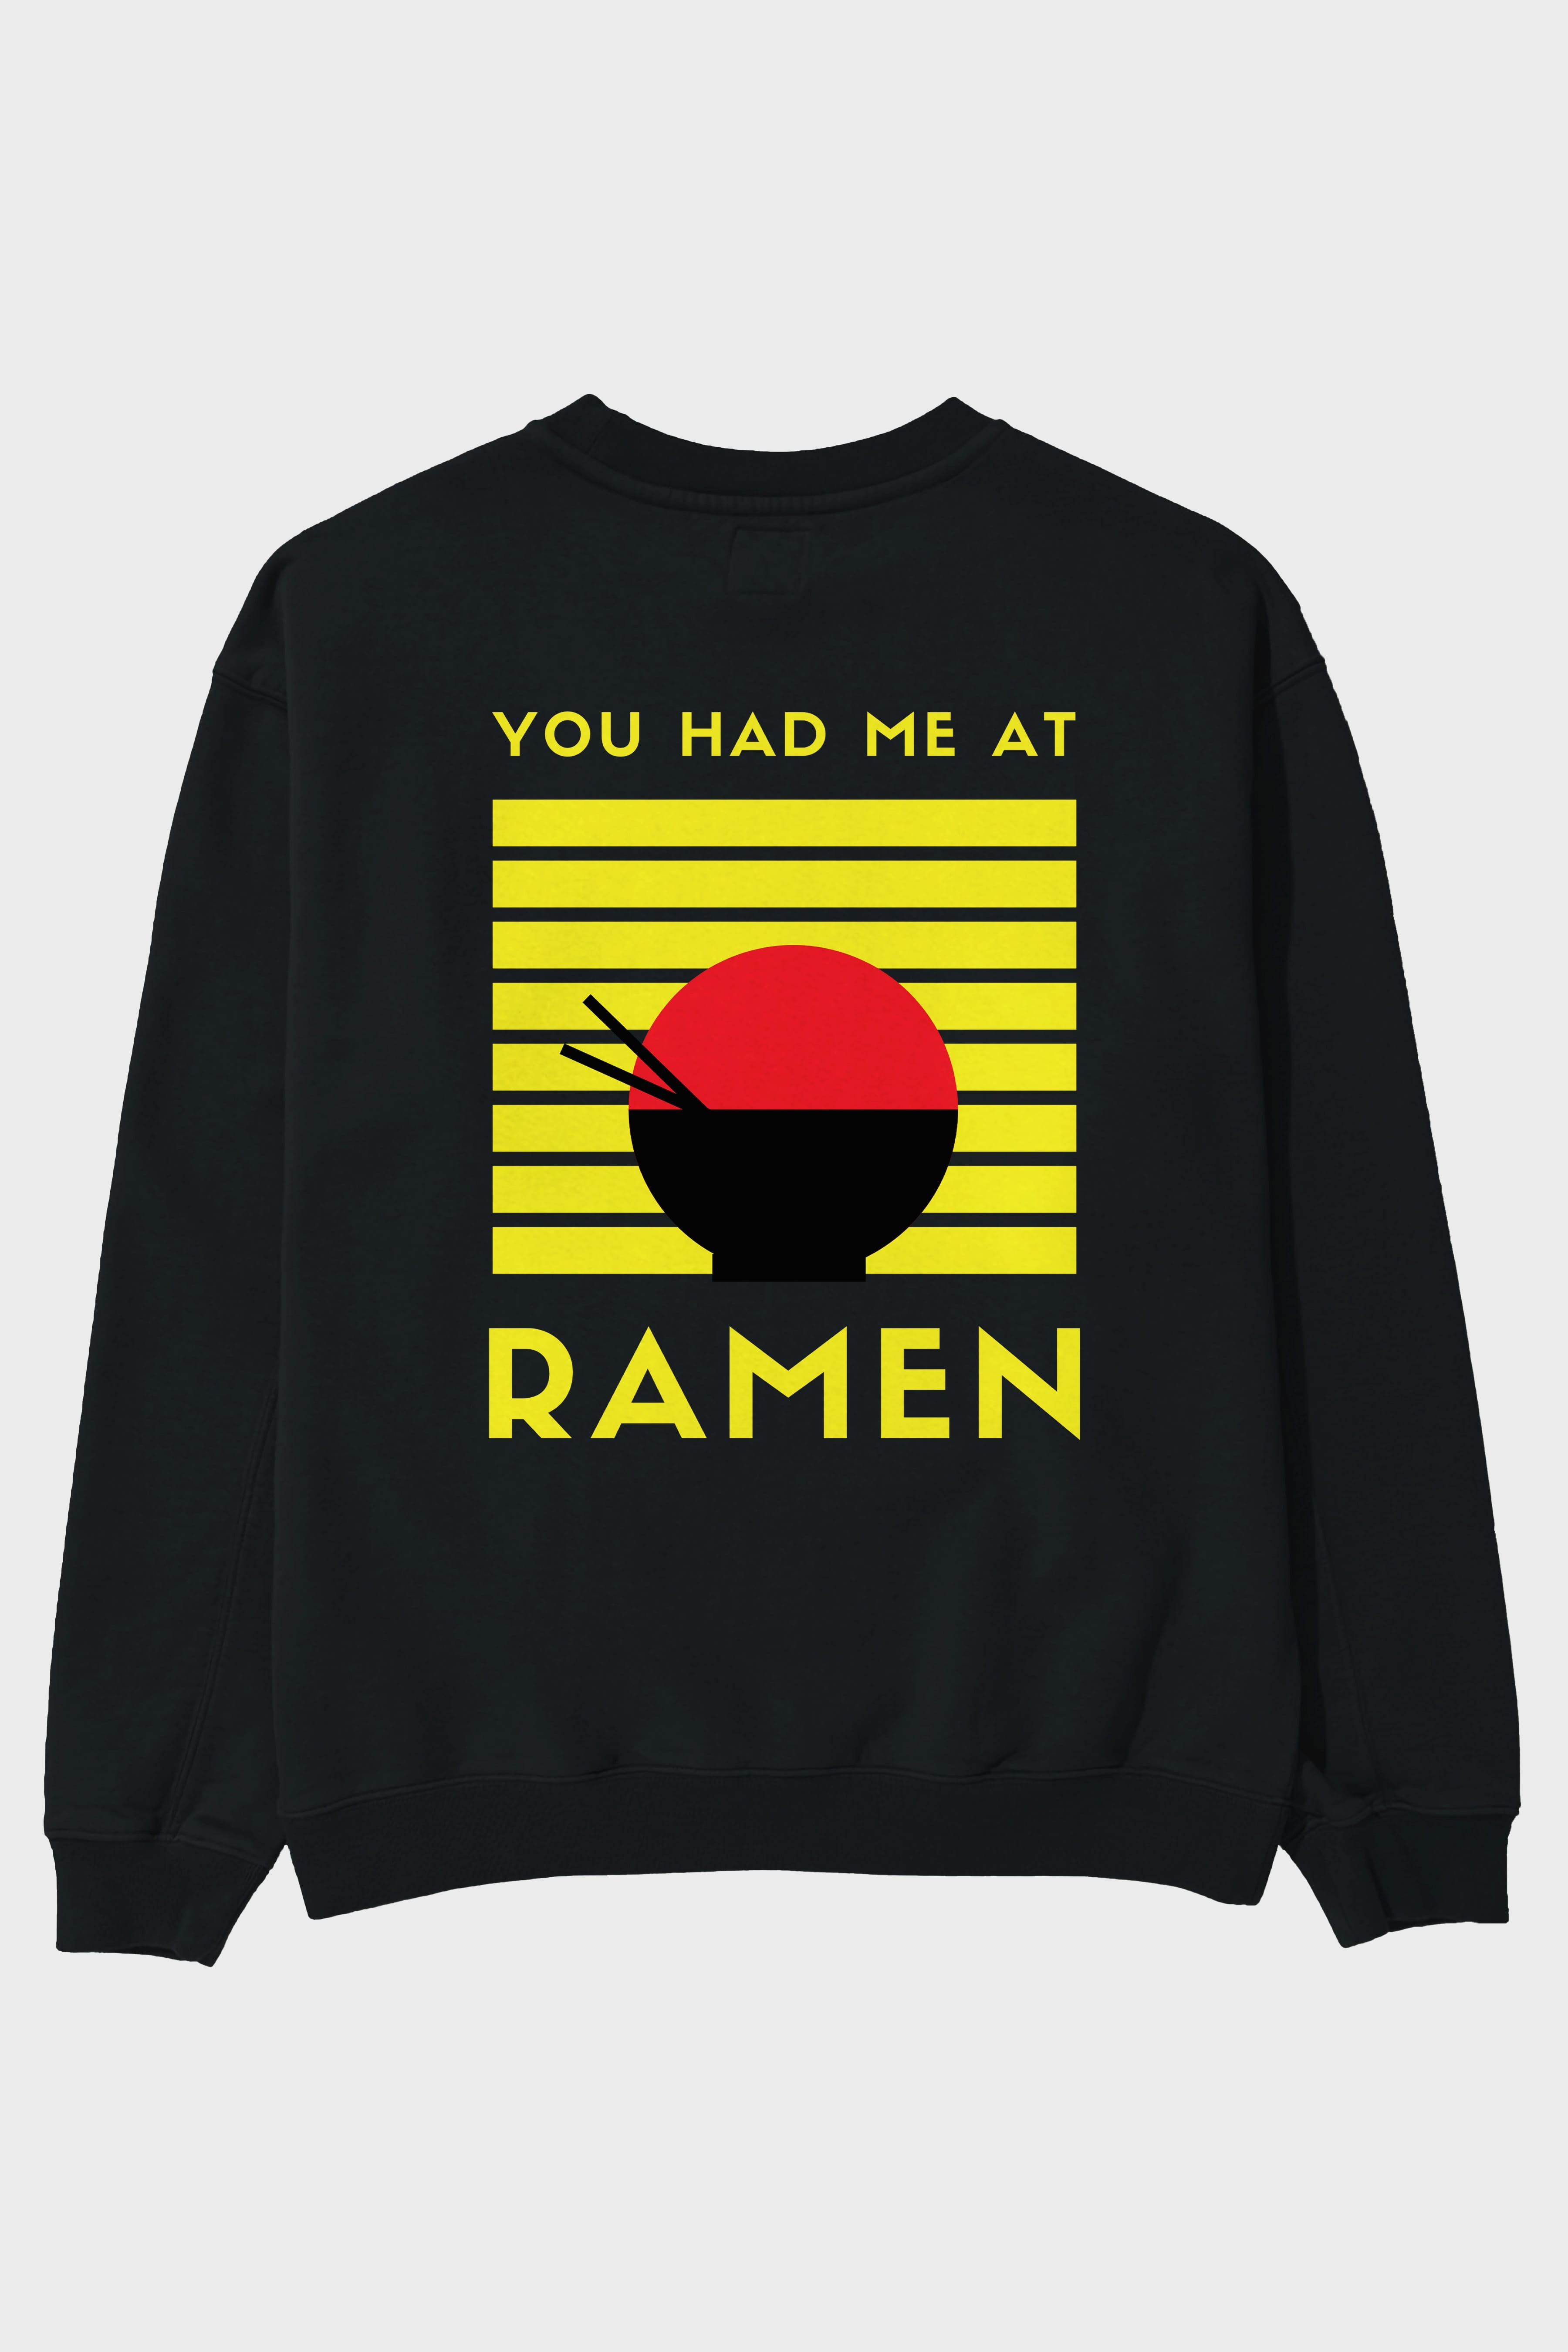 You Had me at Ramen Yazılı Arka Baskılı Oversize Sweatshirt Erkek Kadın Unisex